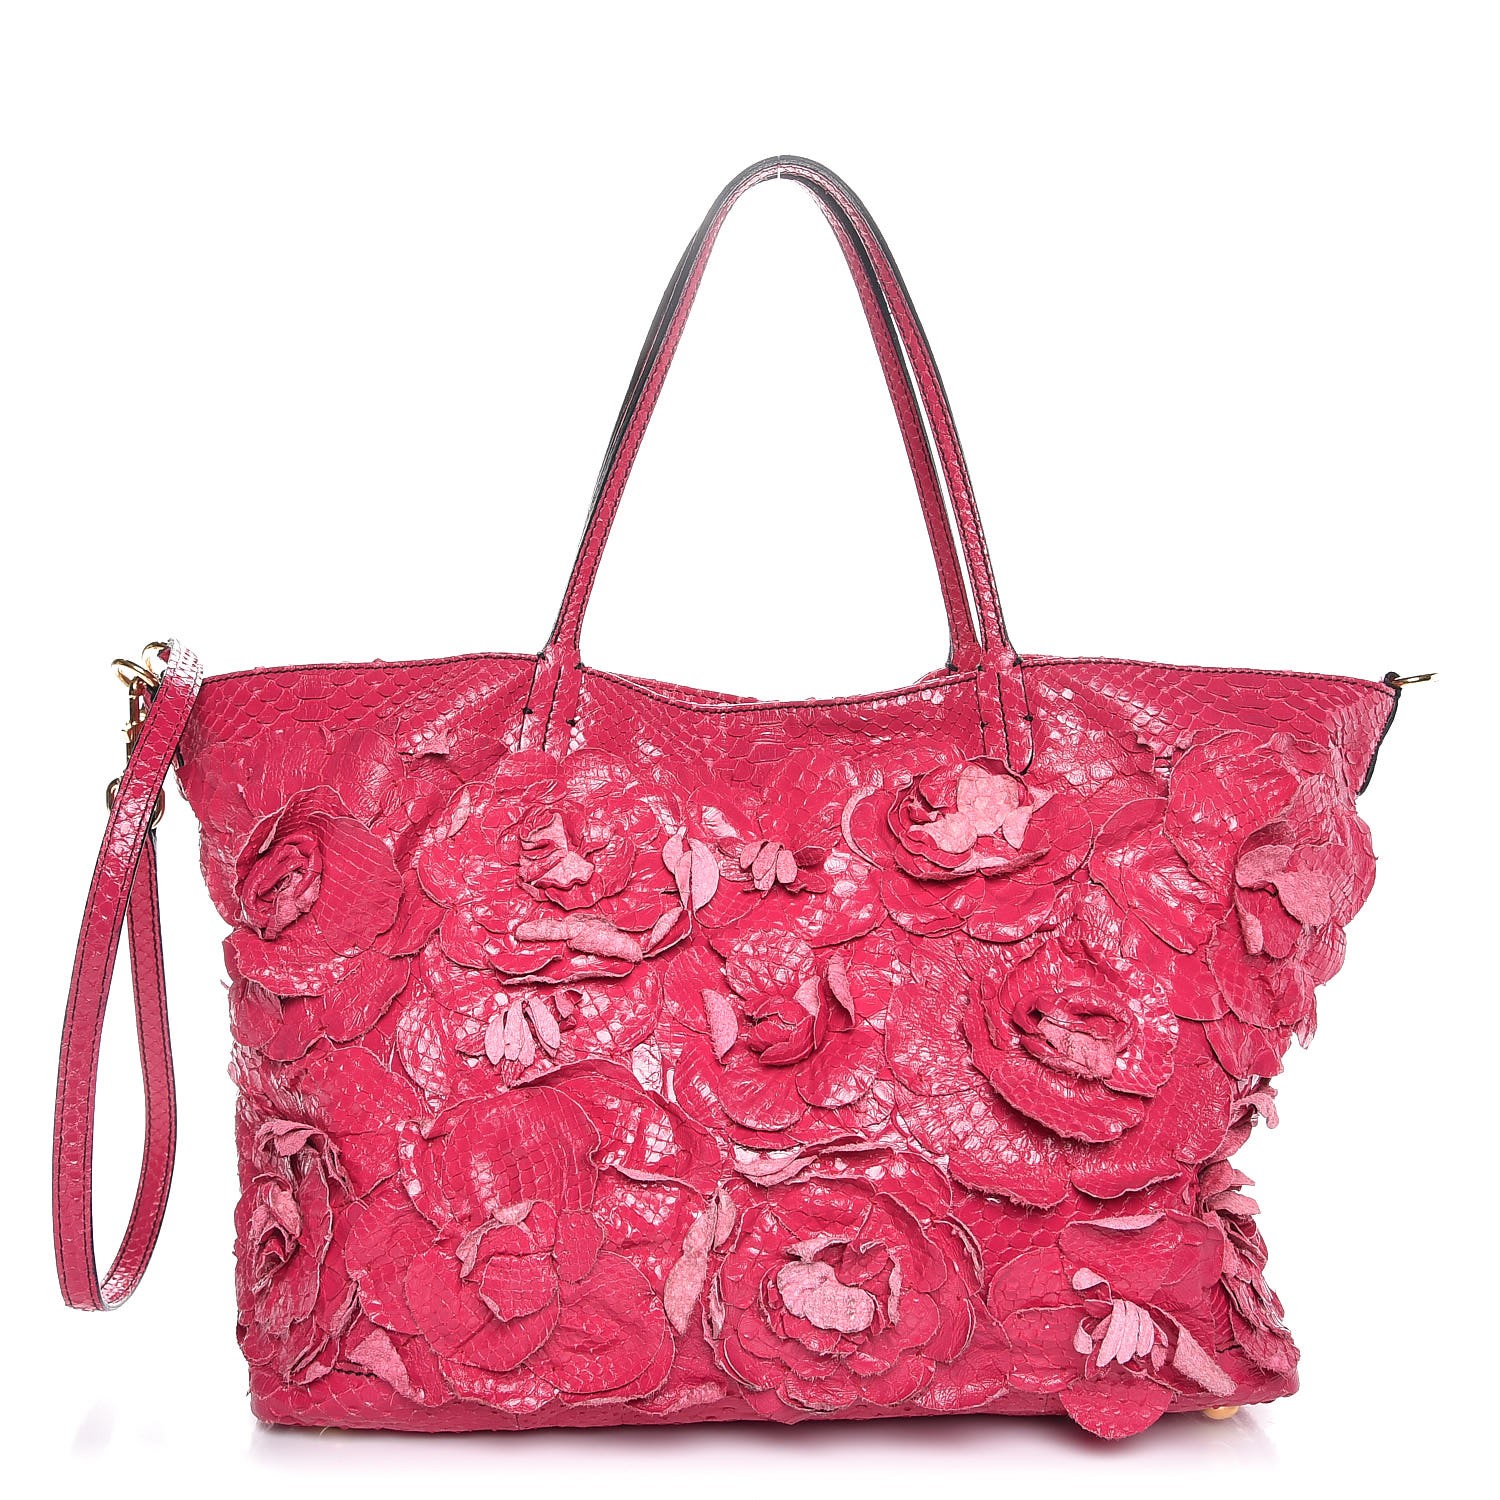 VALENTINO Python Primevere Floral Applique Large Tote Bag Pink 295437